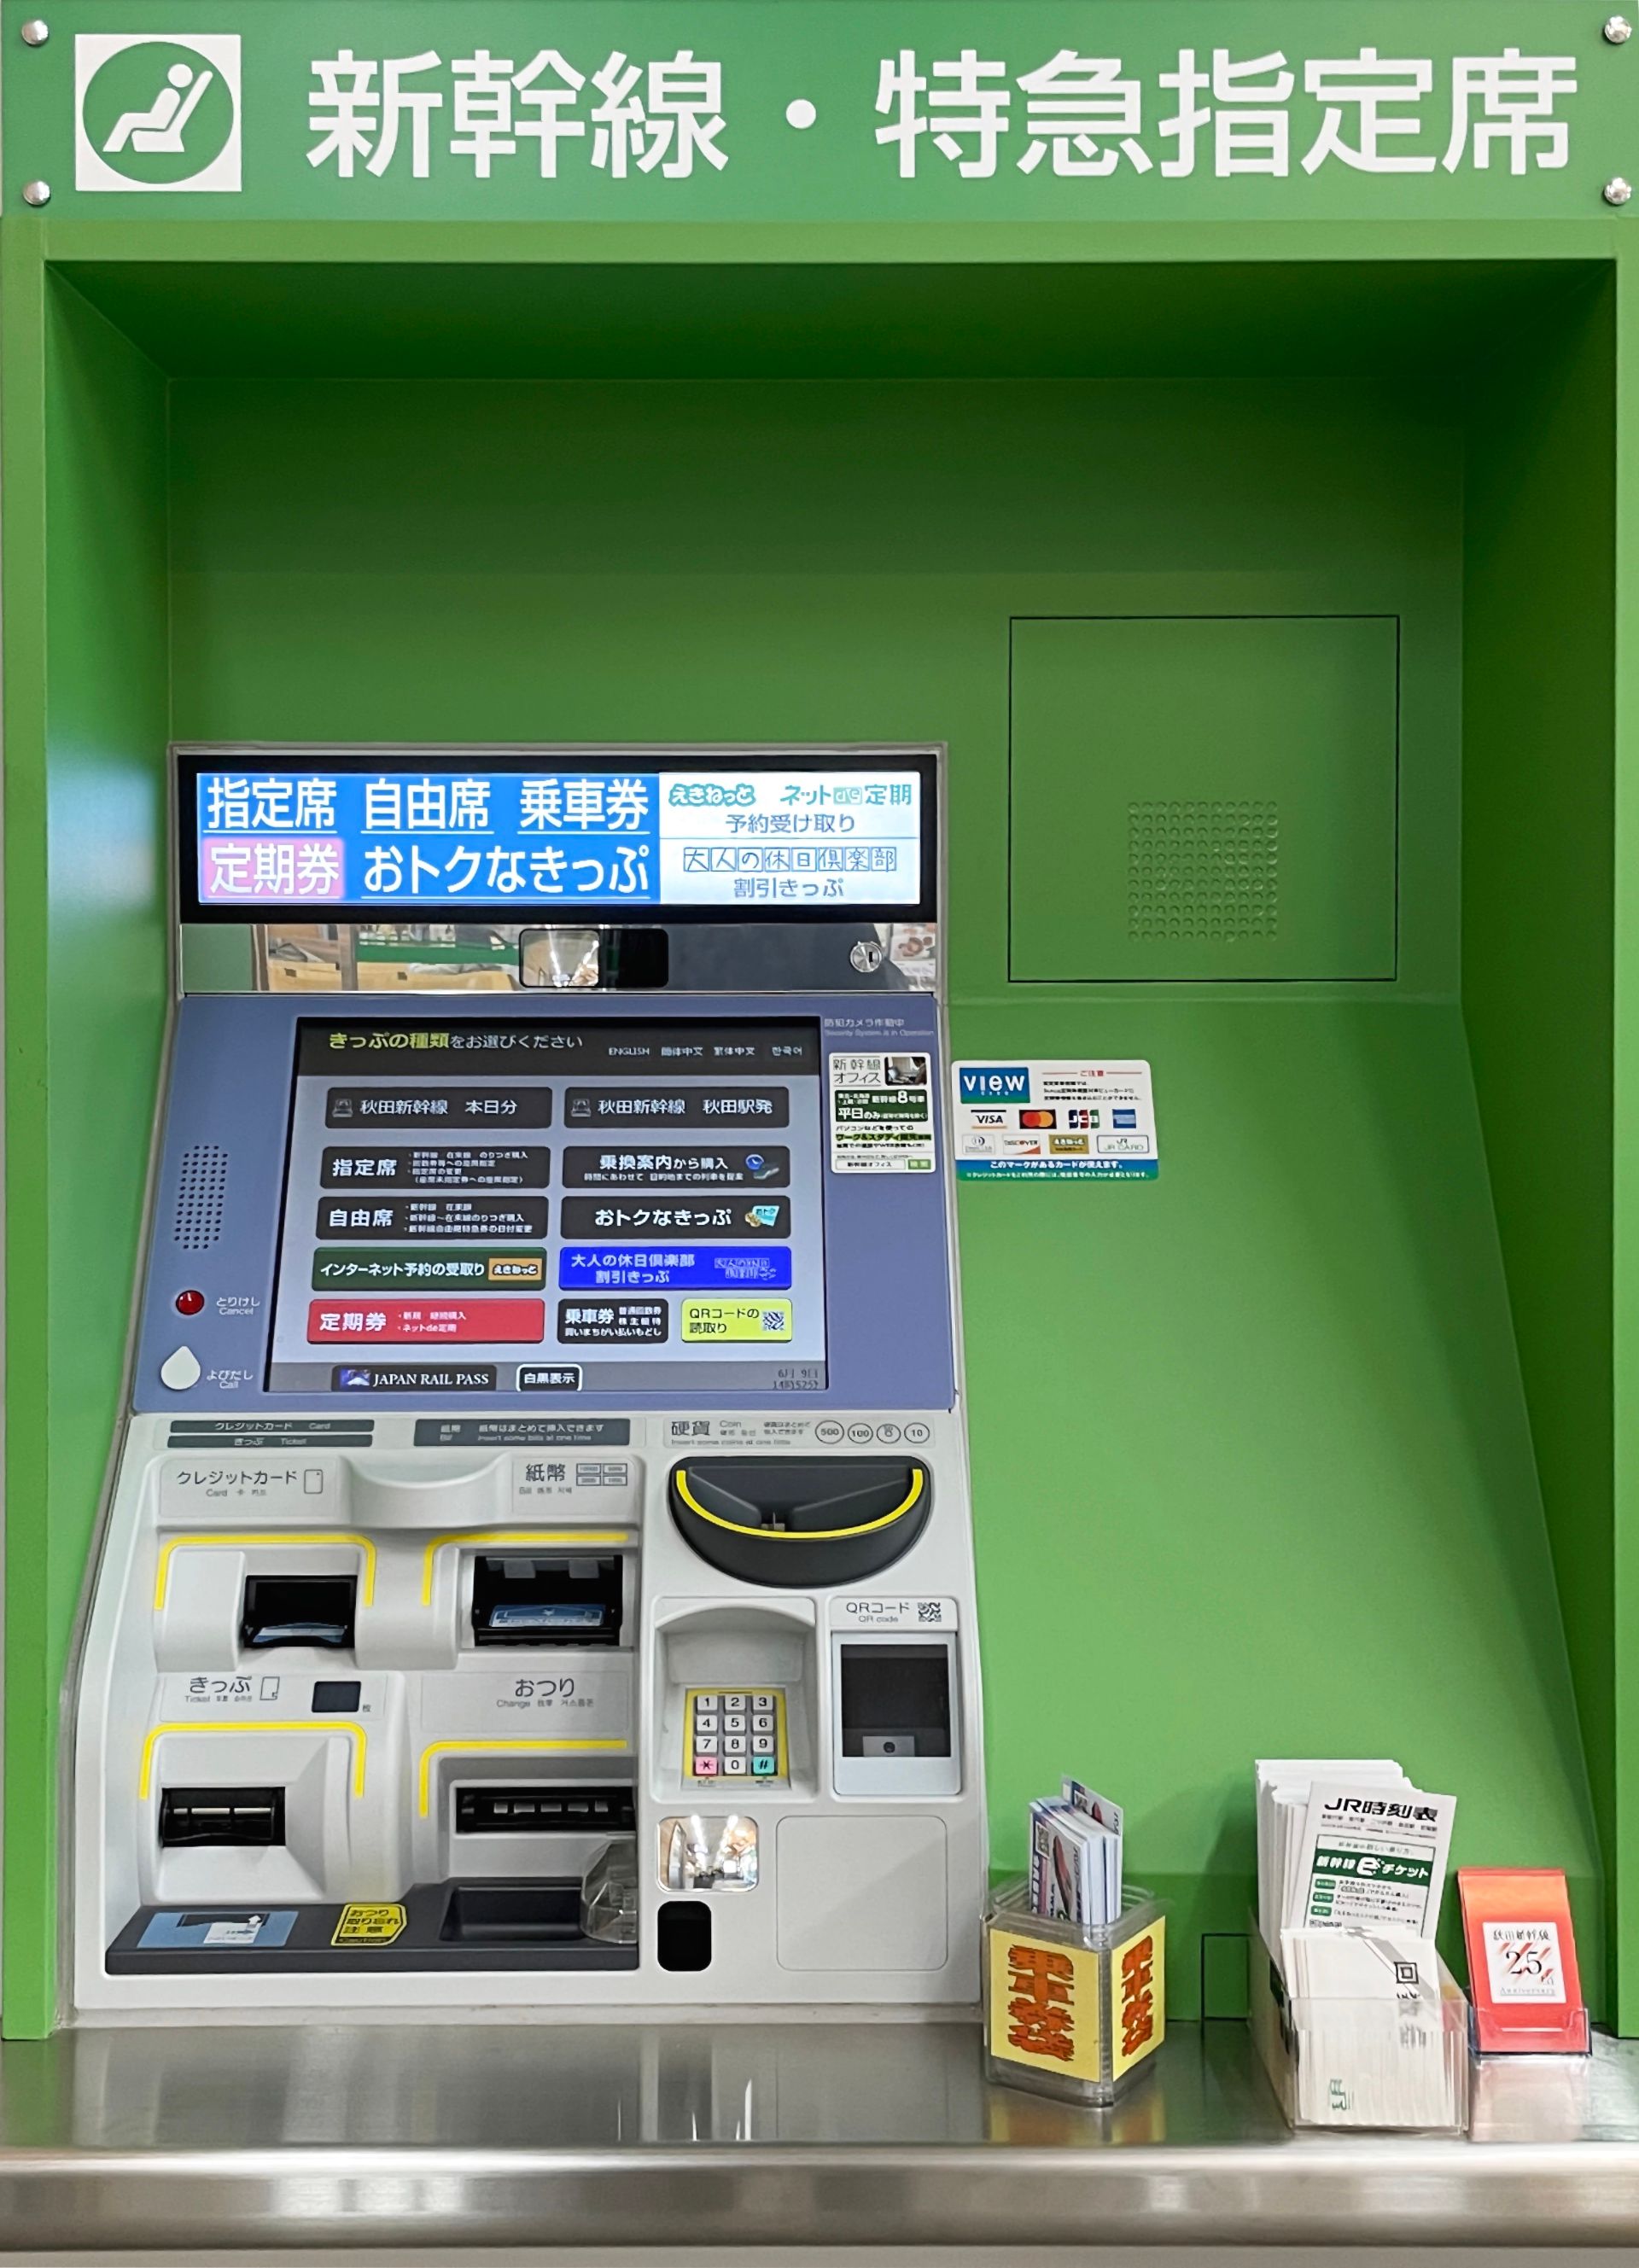 Ein JR-East-Fahr­kar­ten­au­to­mat mit Japan-Rail-Pass-Knopf und QR-Code-Scanner. Asi­en­spie­gel